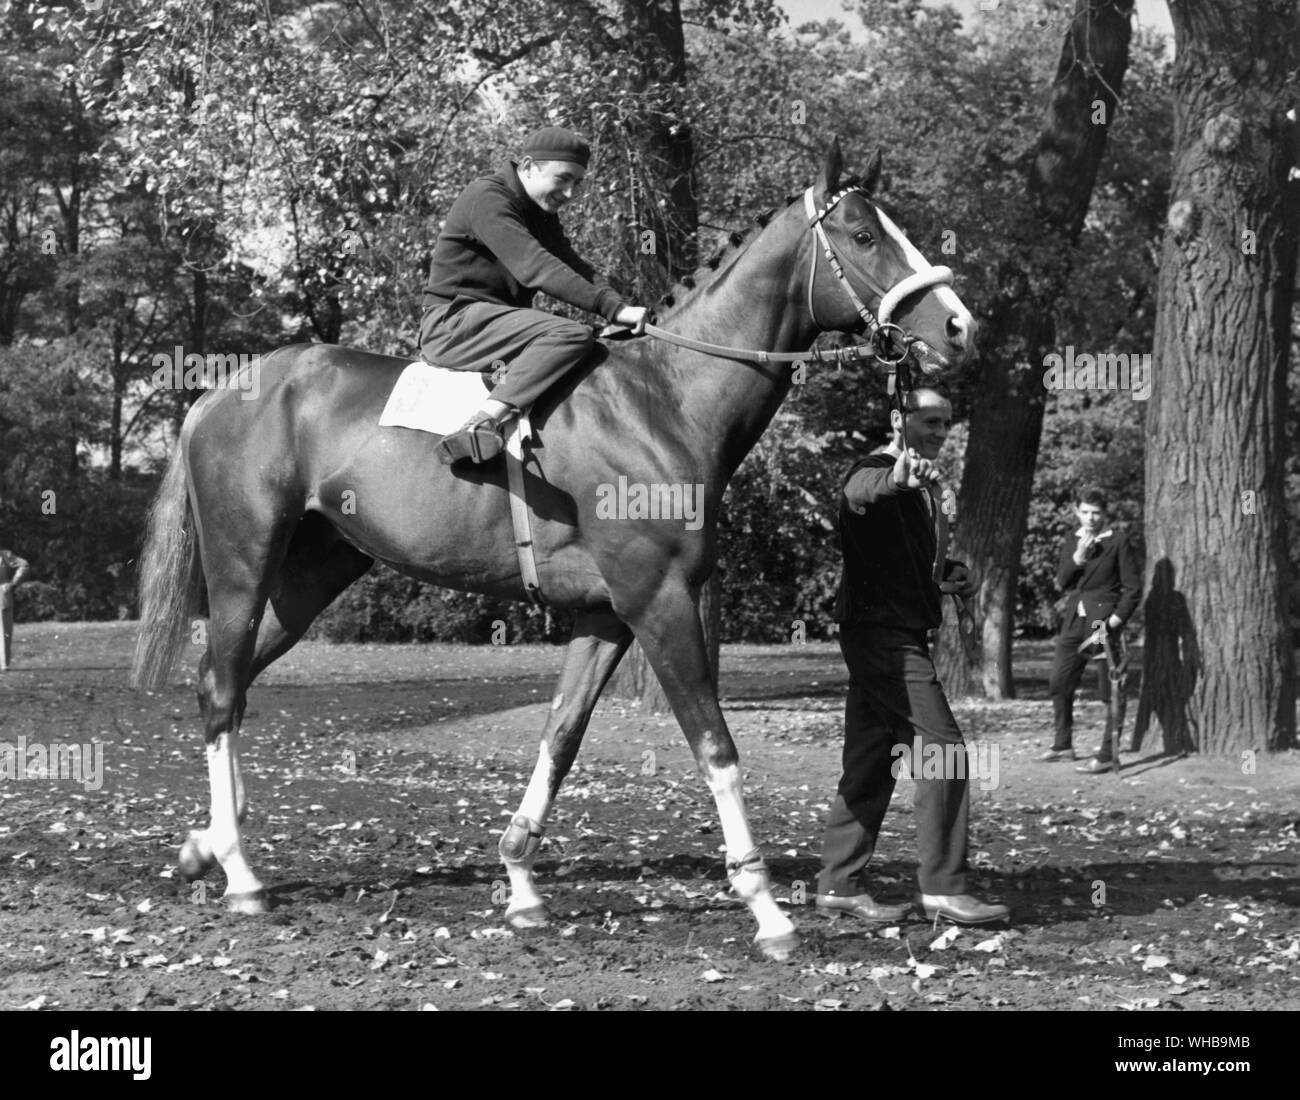 Imperial, berühmter Englischer Vollblüter aus dem Rennsport in Ungarn zu züchten zurückgezogen. Foto von Laszlo Miko Stockfoto